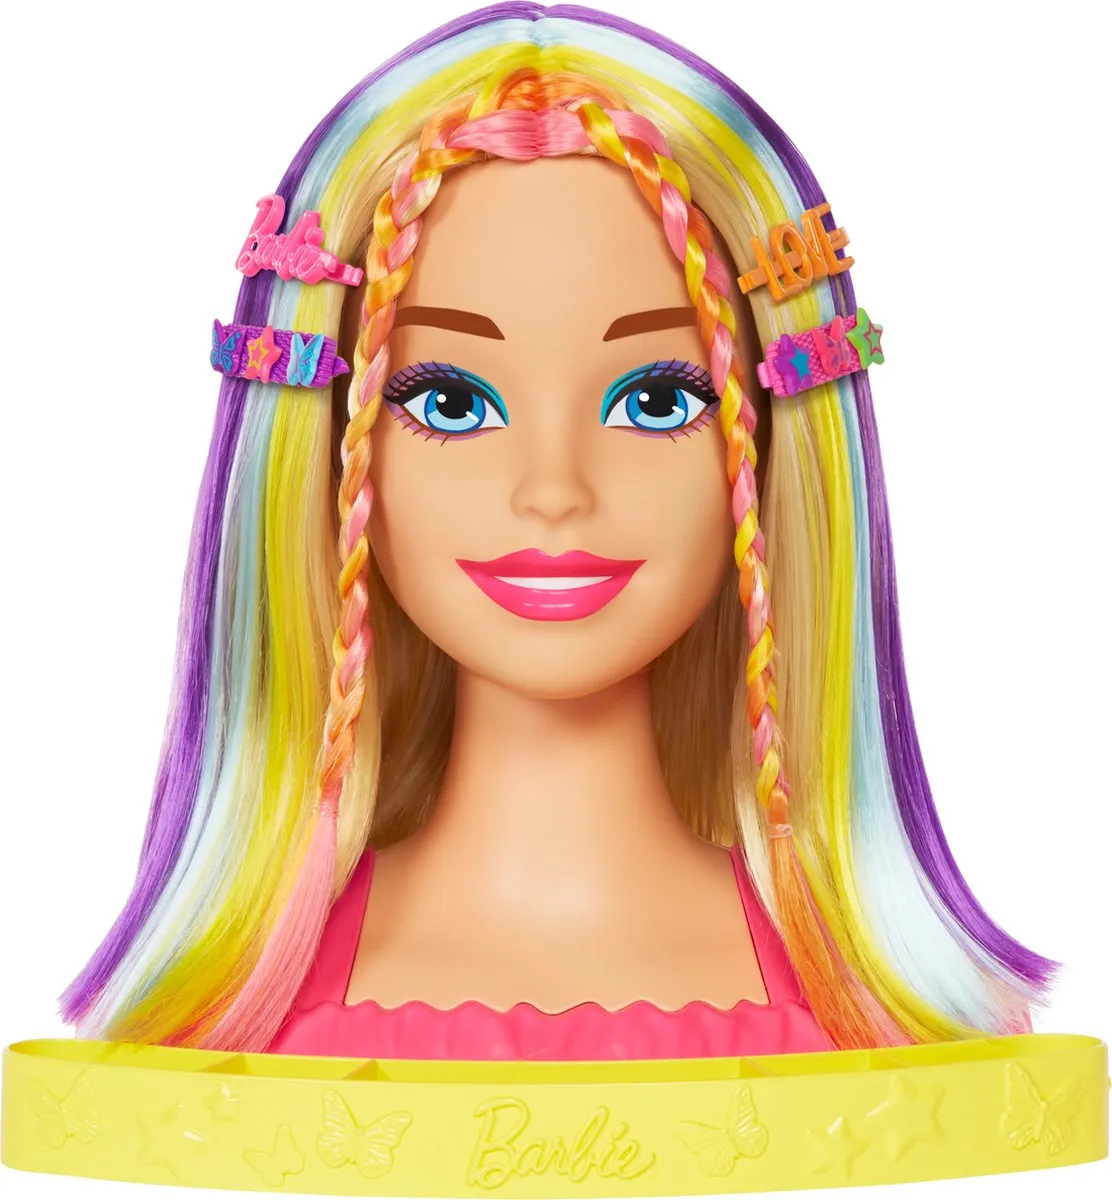 Barbie - Color Reveal - Kaphoofd - Neon regenboogkleuren speelgoed